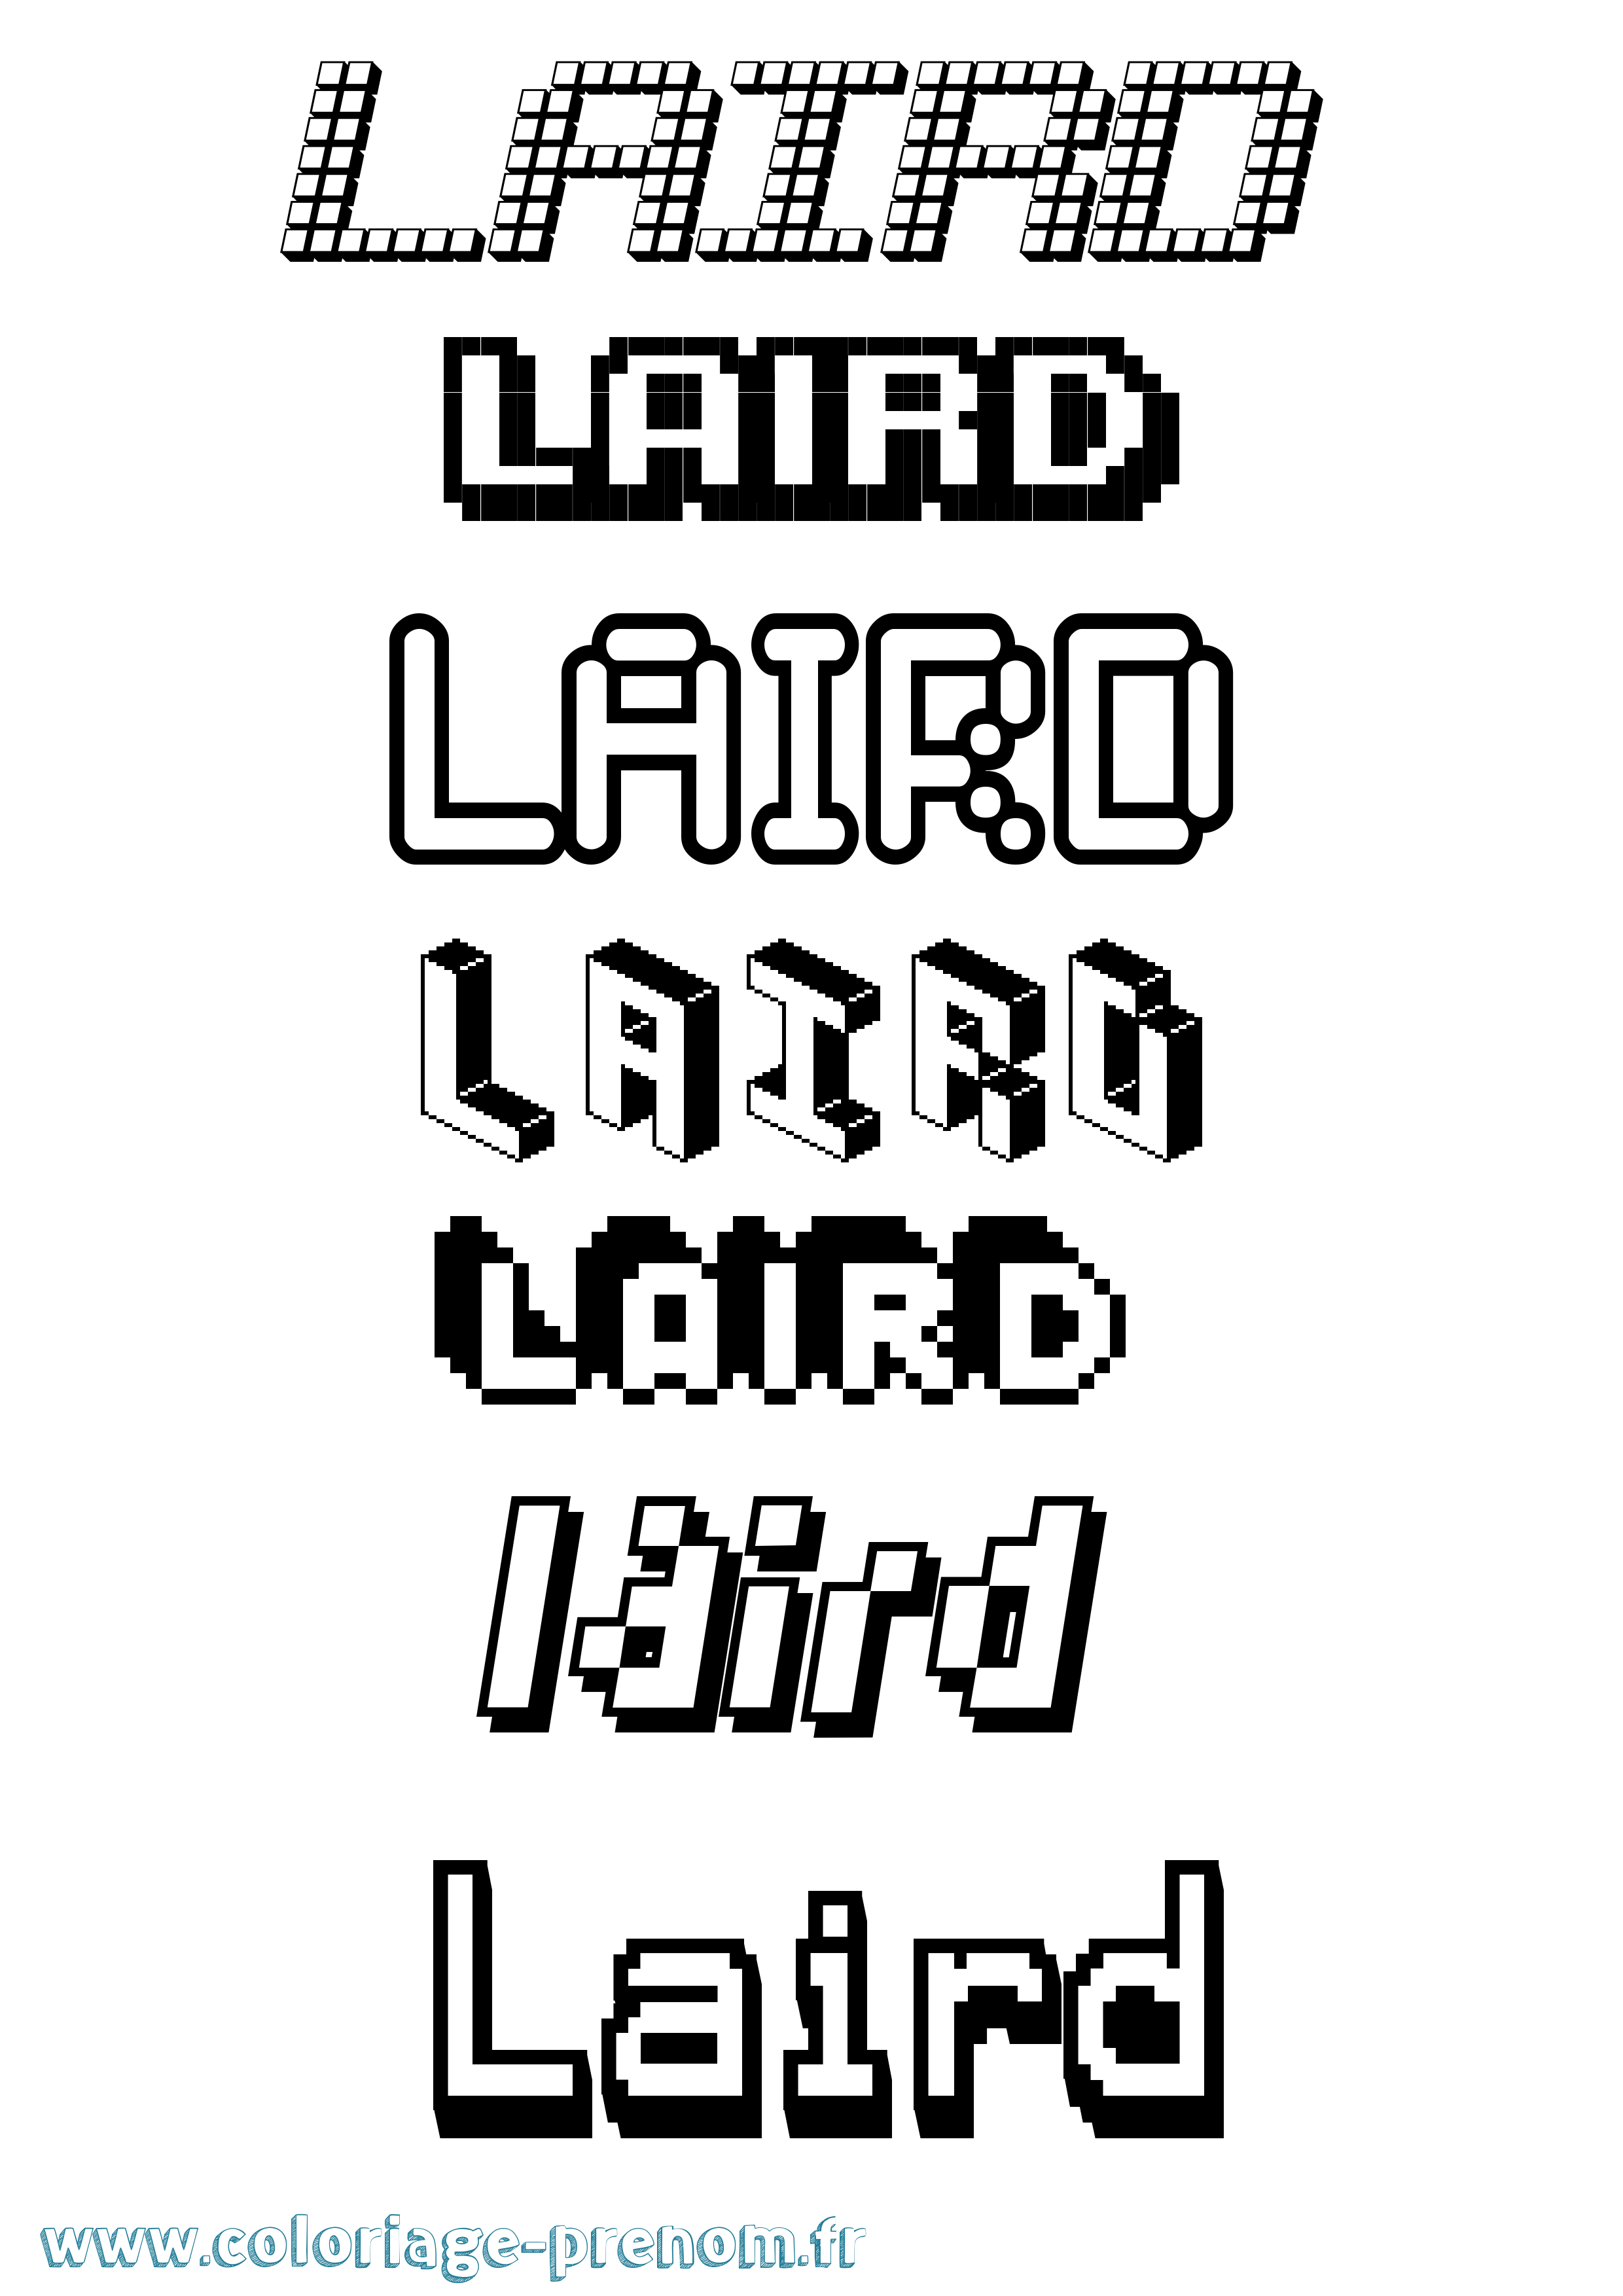 Coloriage prénom Laird Pixel